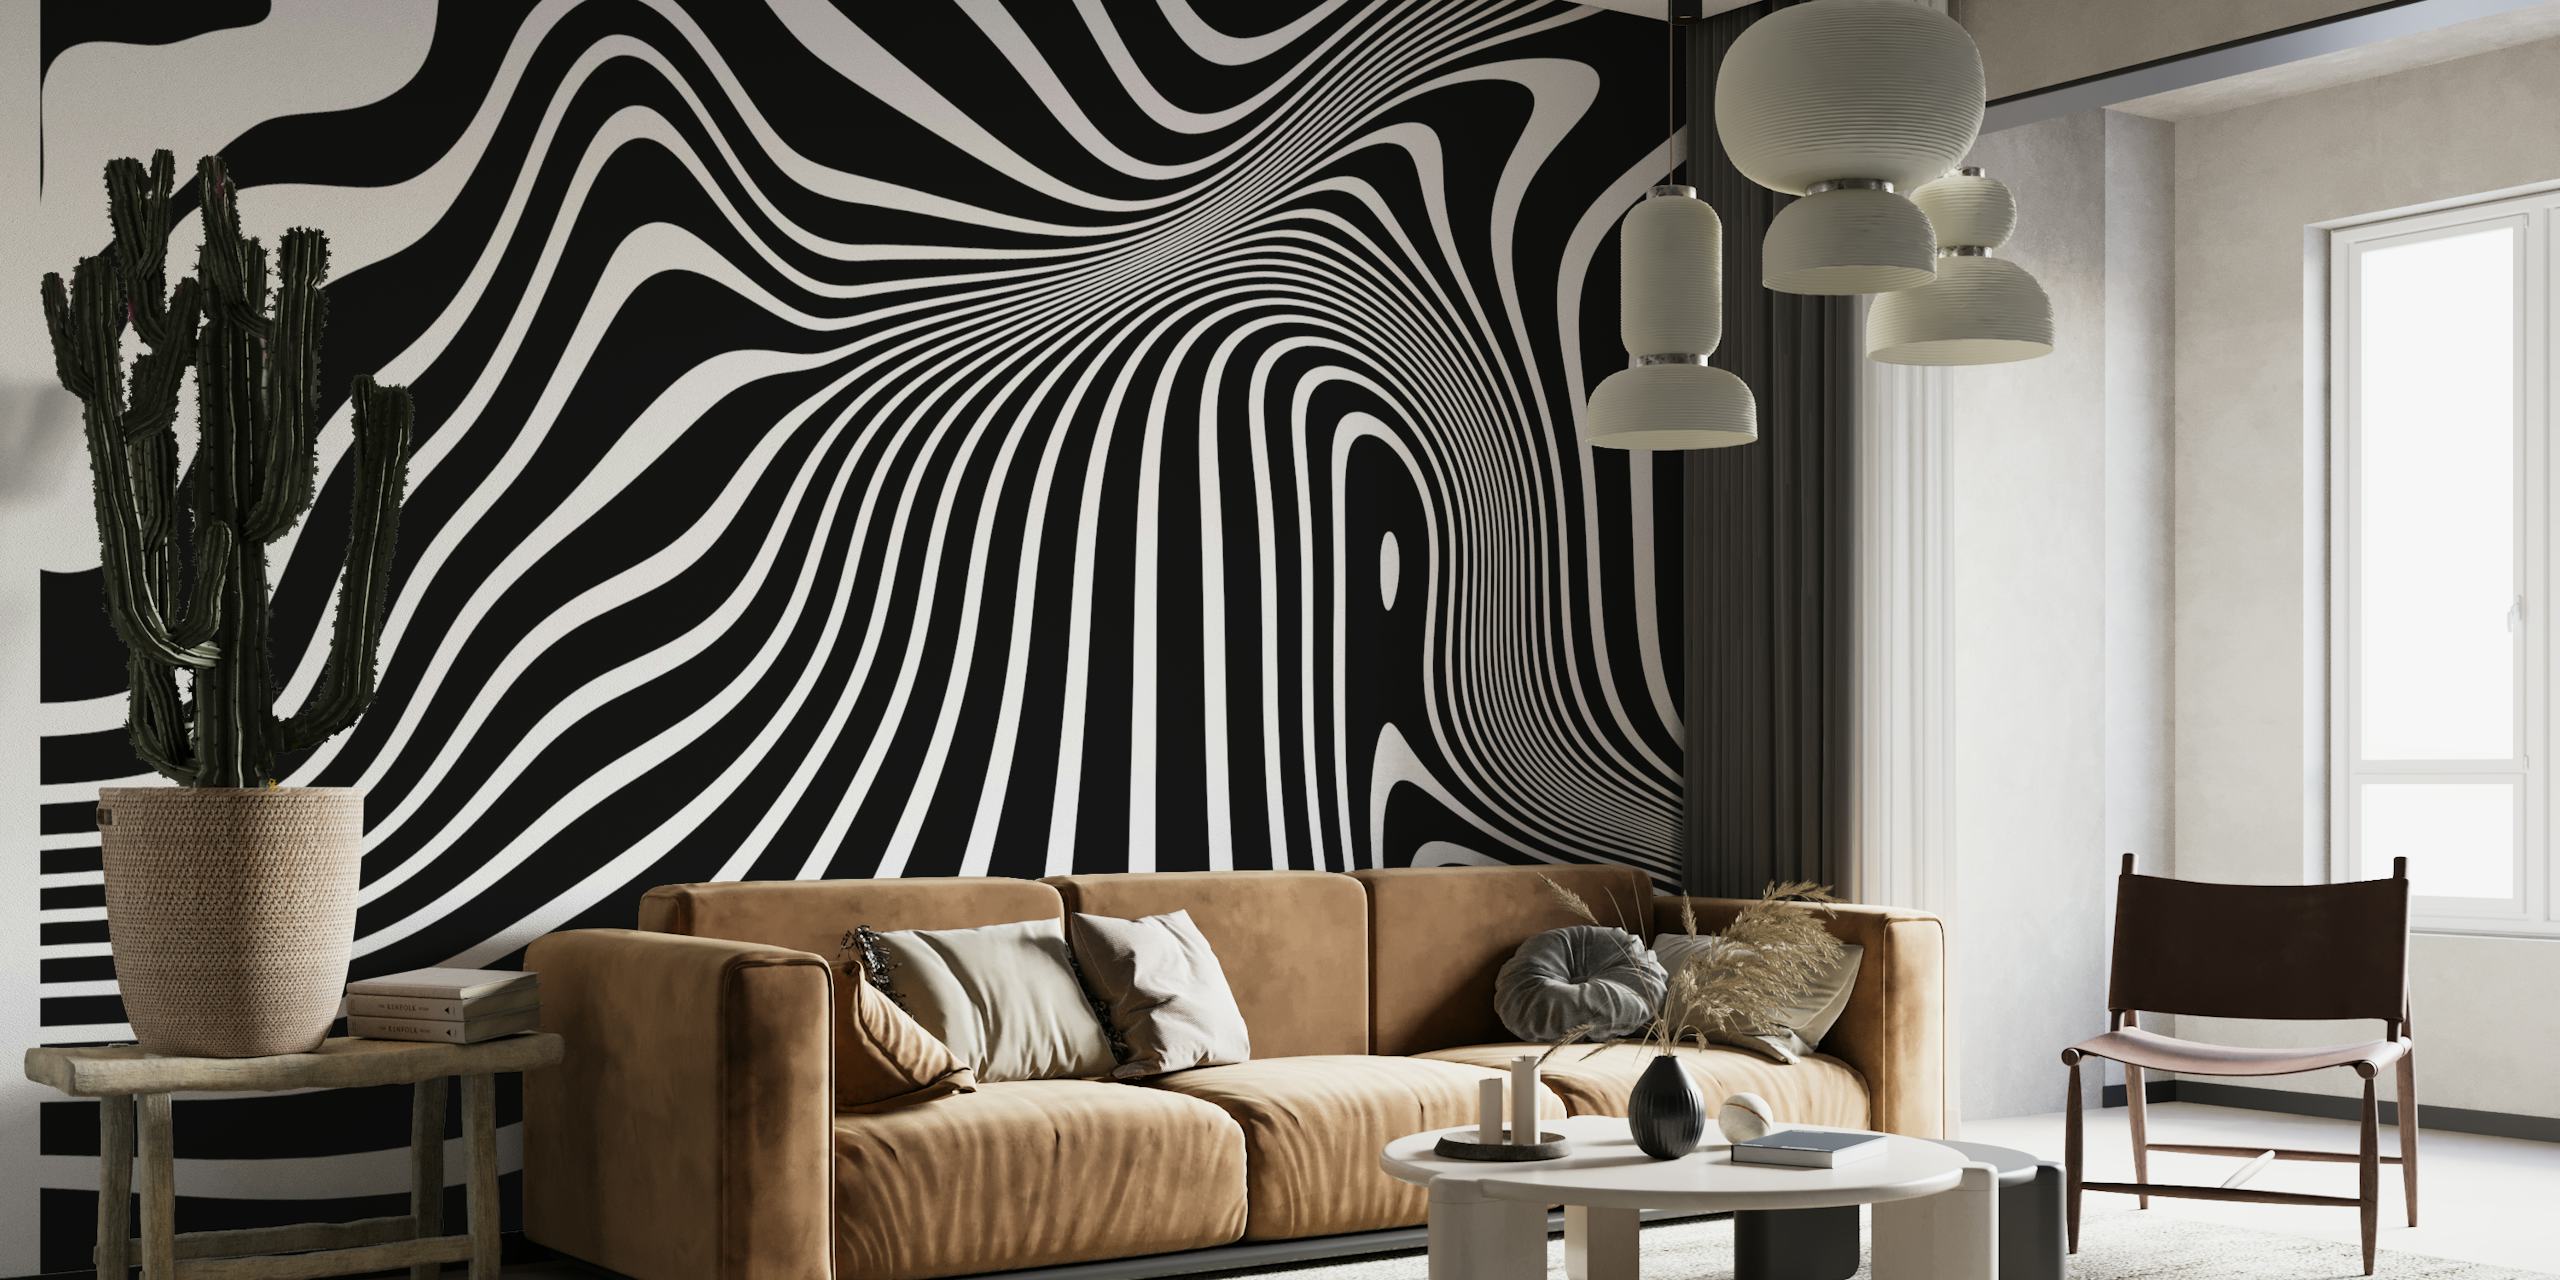 Mural minimalista de arte op-art em preto e branco com linhas fluidas